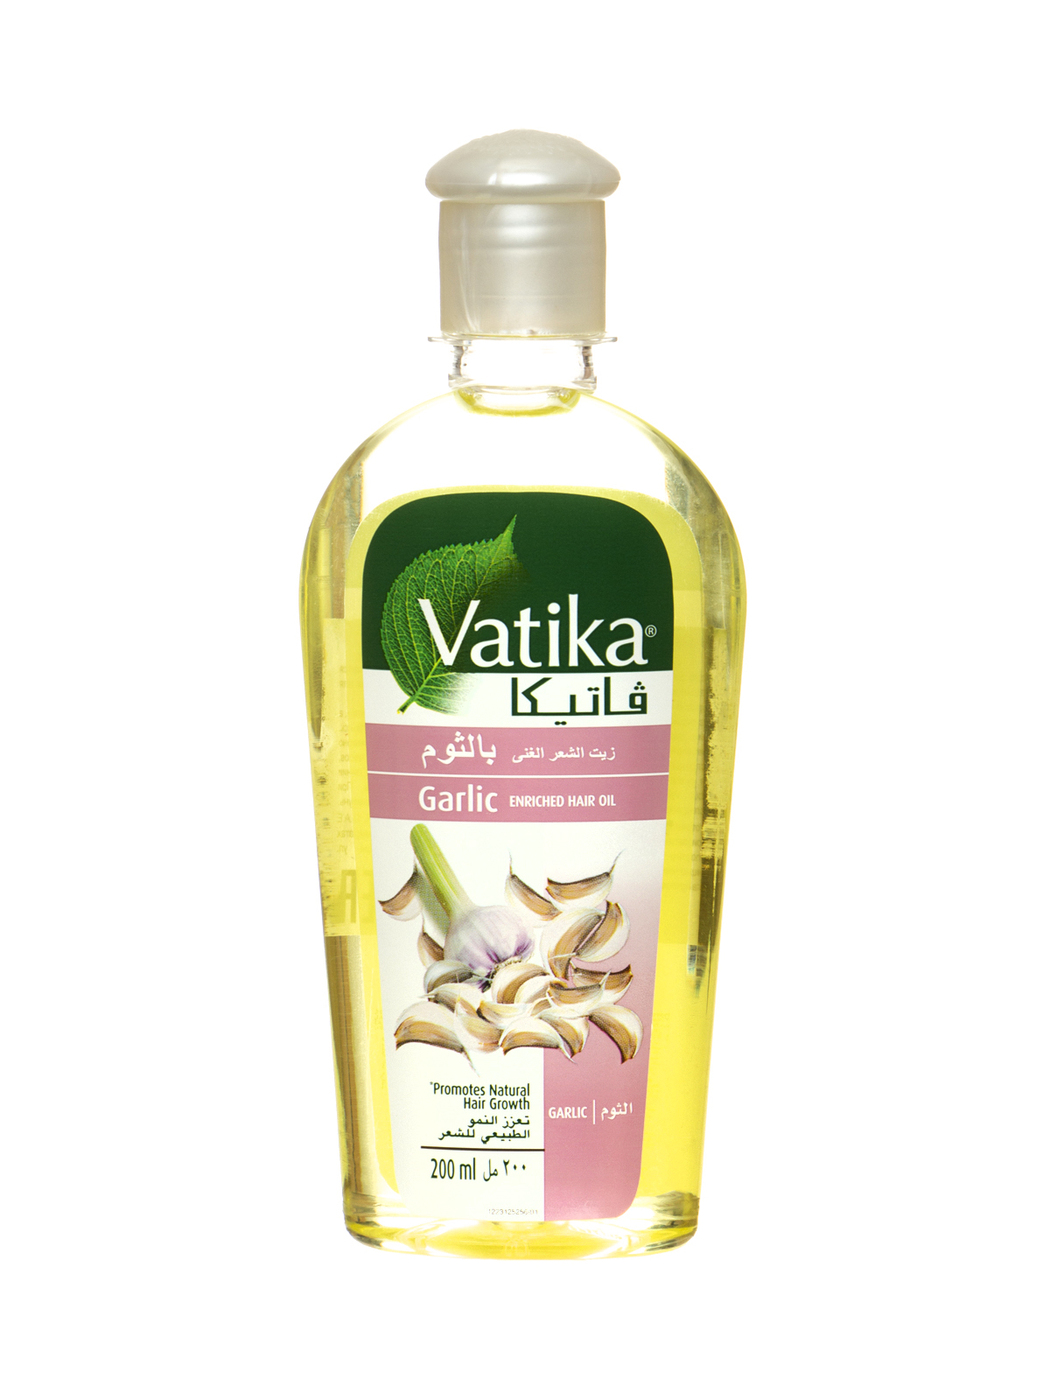 Как использовать масло для волос dabur vatika